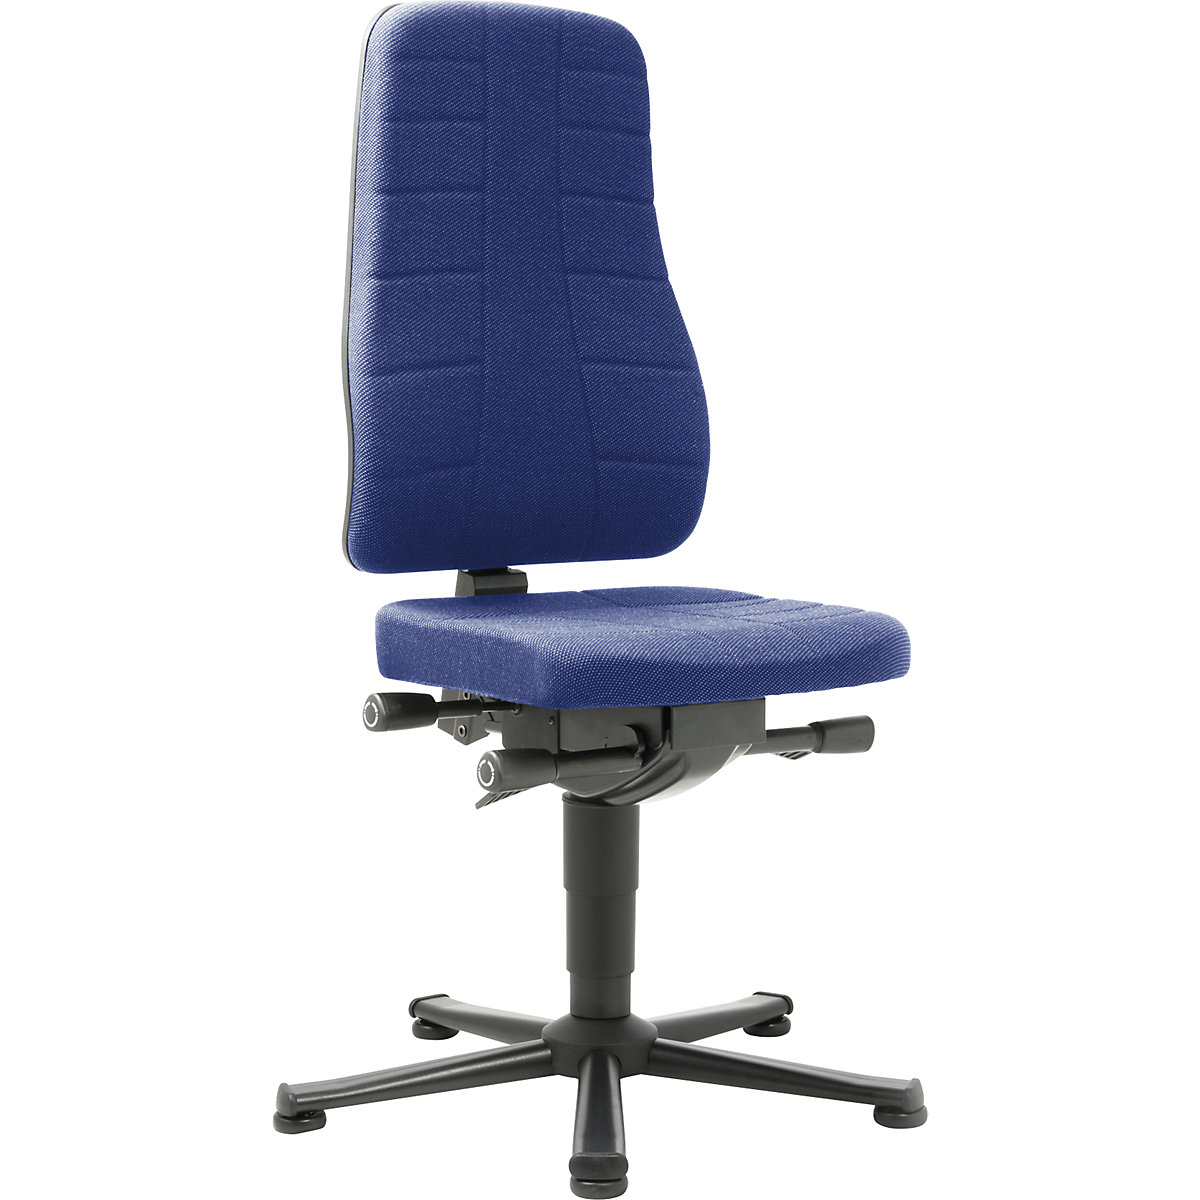 Pracovní otočná židle All-in-One - bimos